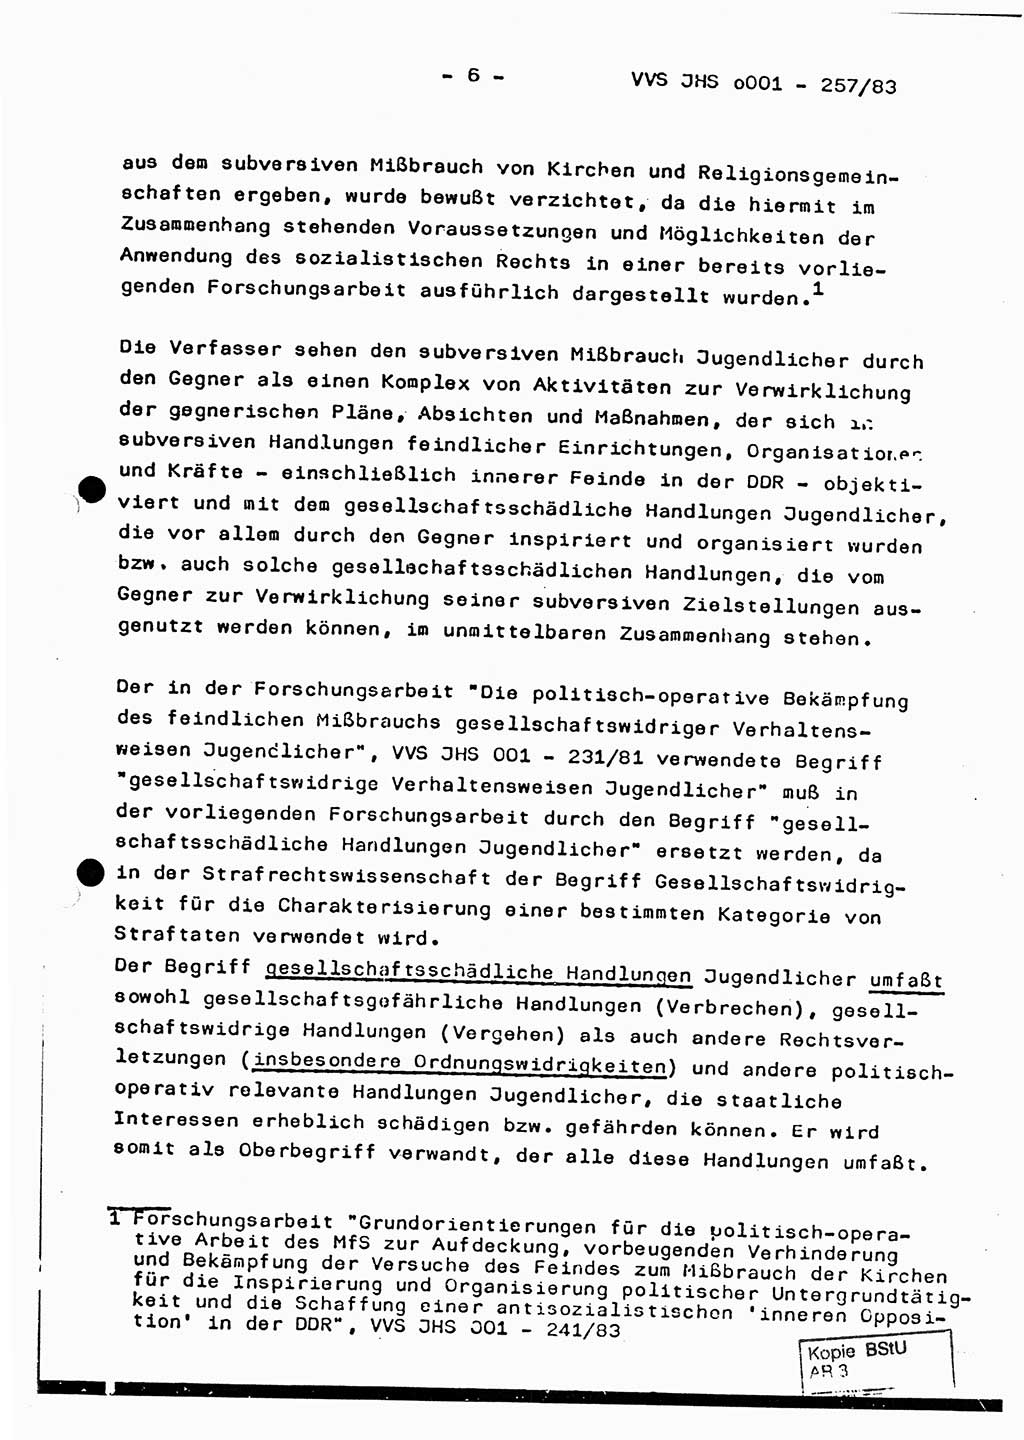 Dissertation, Oberst Helmut Lubas (BV Mdg.), Oberstleutnant Manfred Eschberger (HA IX), Oberleutnant Hans-Jürgen Ludwig (JHS), Ministerium für Staatssicherheit (MfS) [Deutsche Demokratische Republik (DDR)], Juristische Hochschule (JHS), Vertrauliche Verschlußsache (VVS) o001-257/83, Potsdam 1983, Seite 6 (Diss. MfS DDR JHS VVS o001-257/83 1983, S. 6)